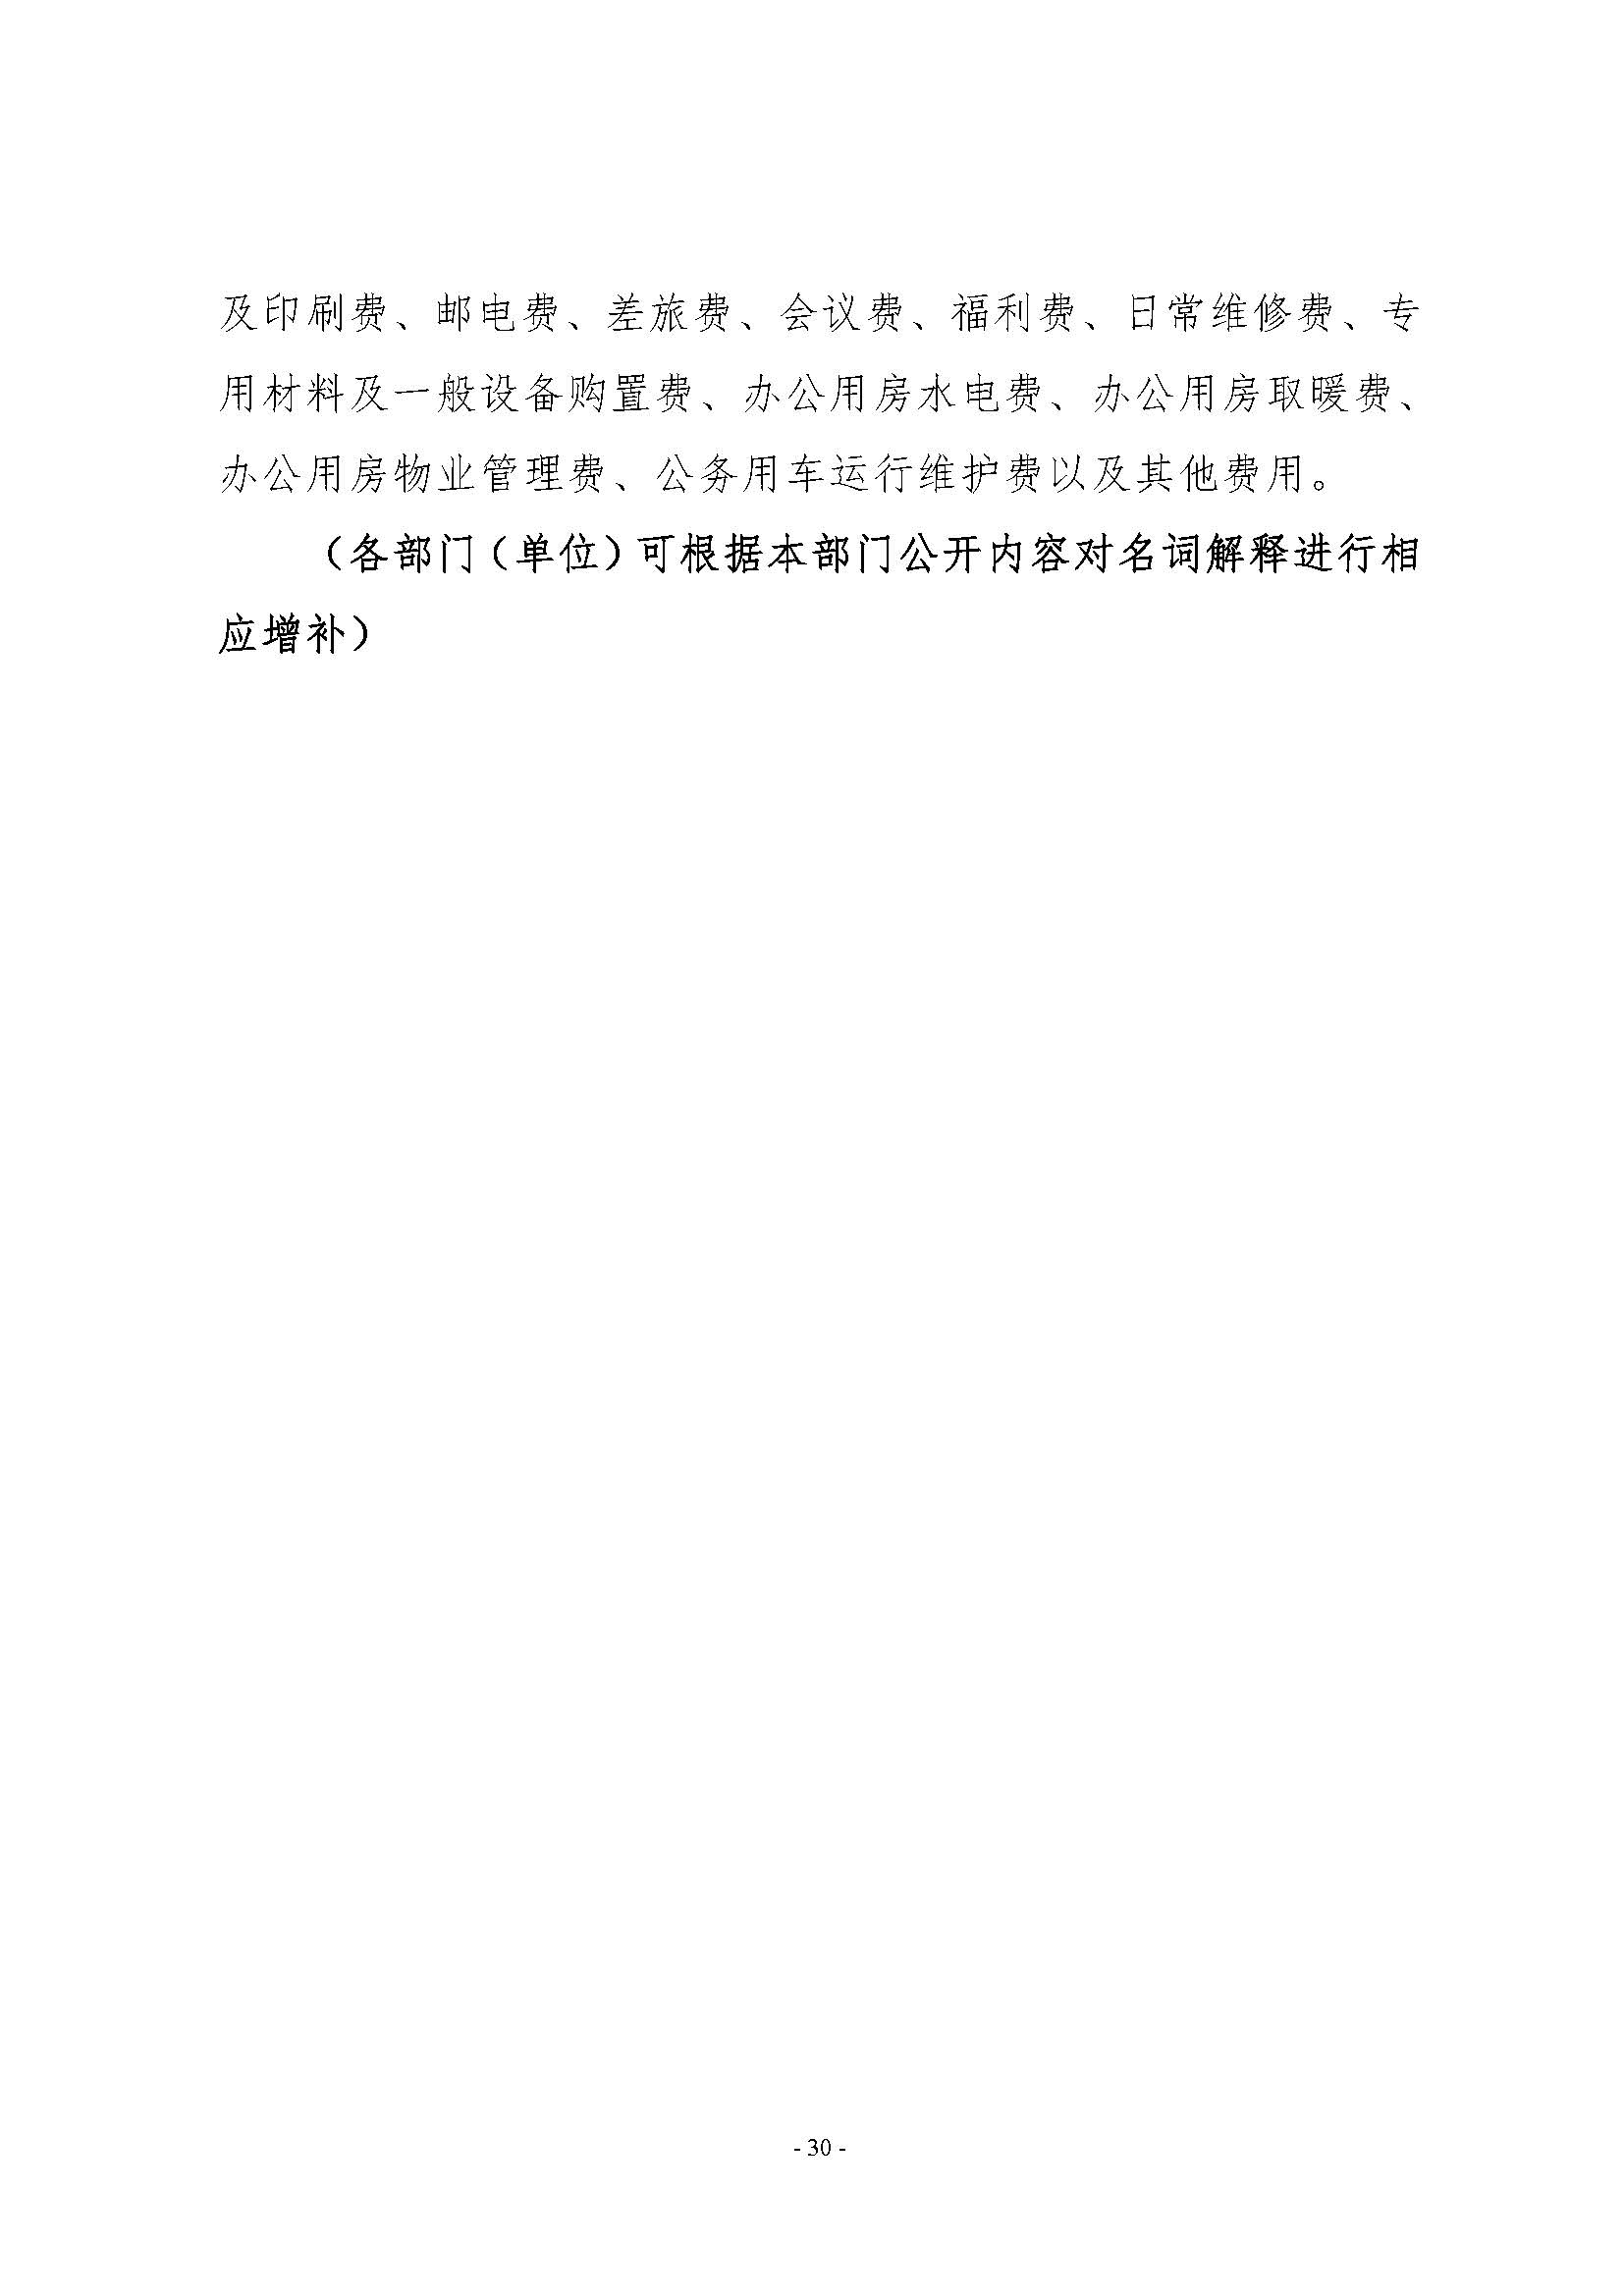 河南省水利科学研究院2022年年度省直部门决算公开(2)_页面_30.jpg